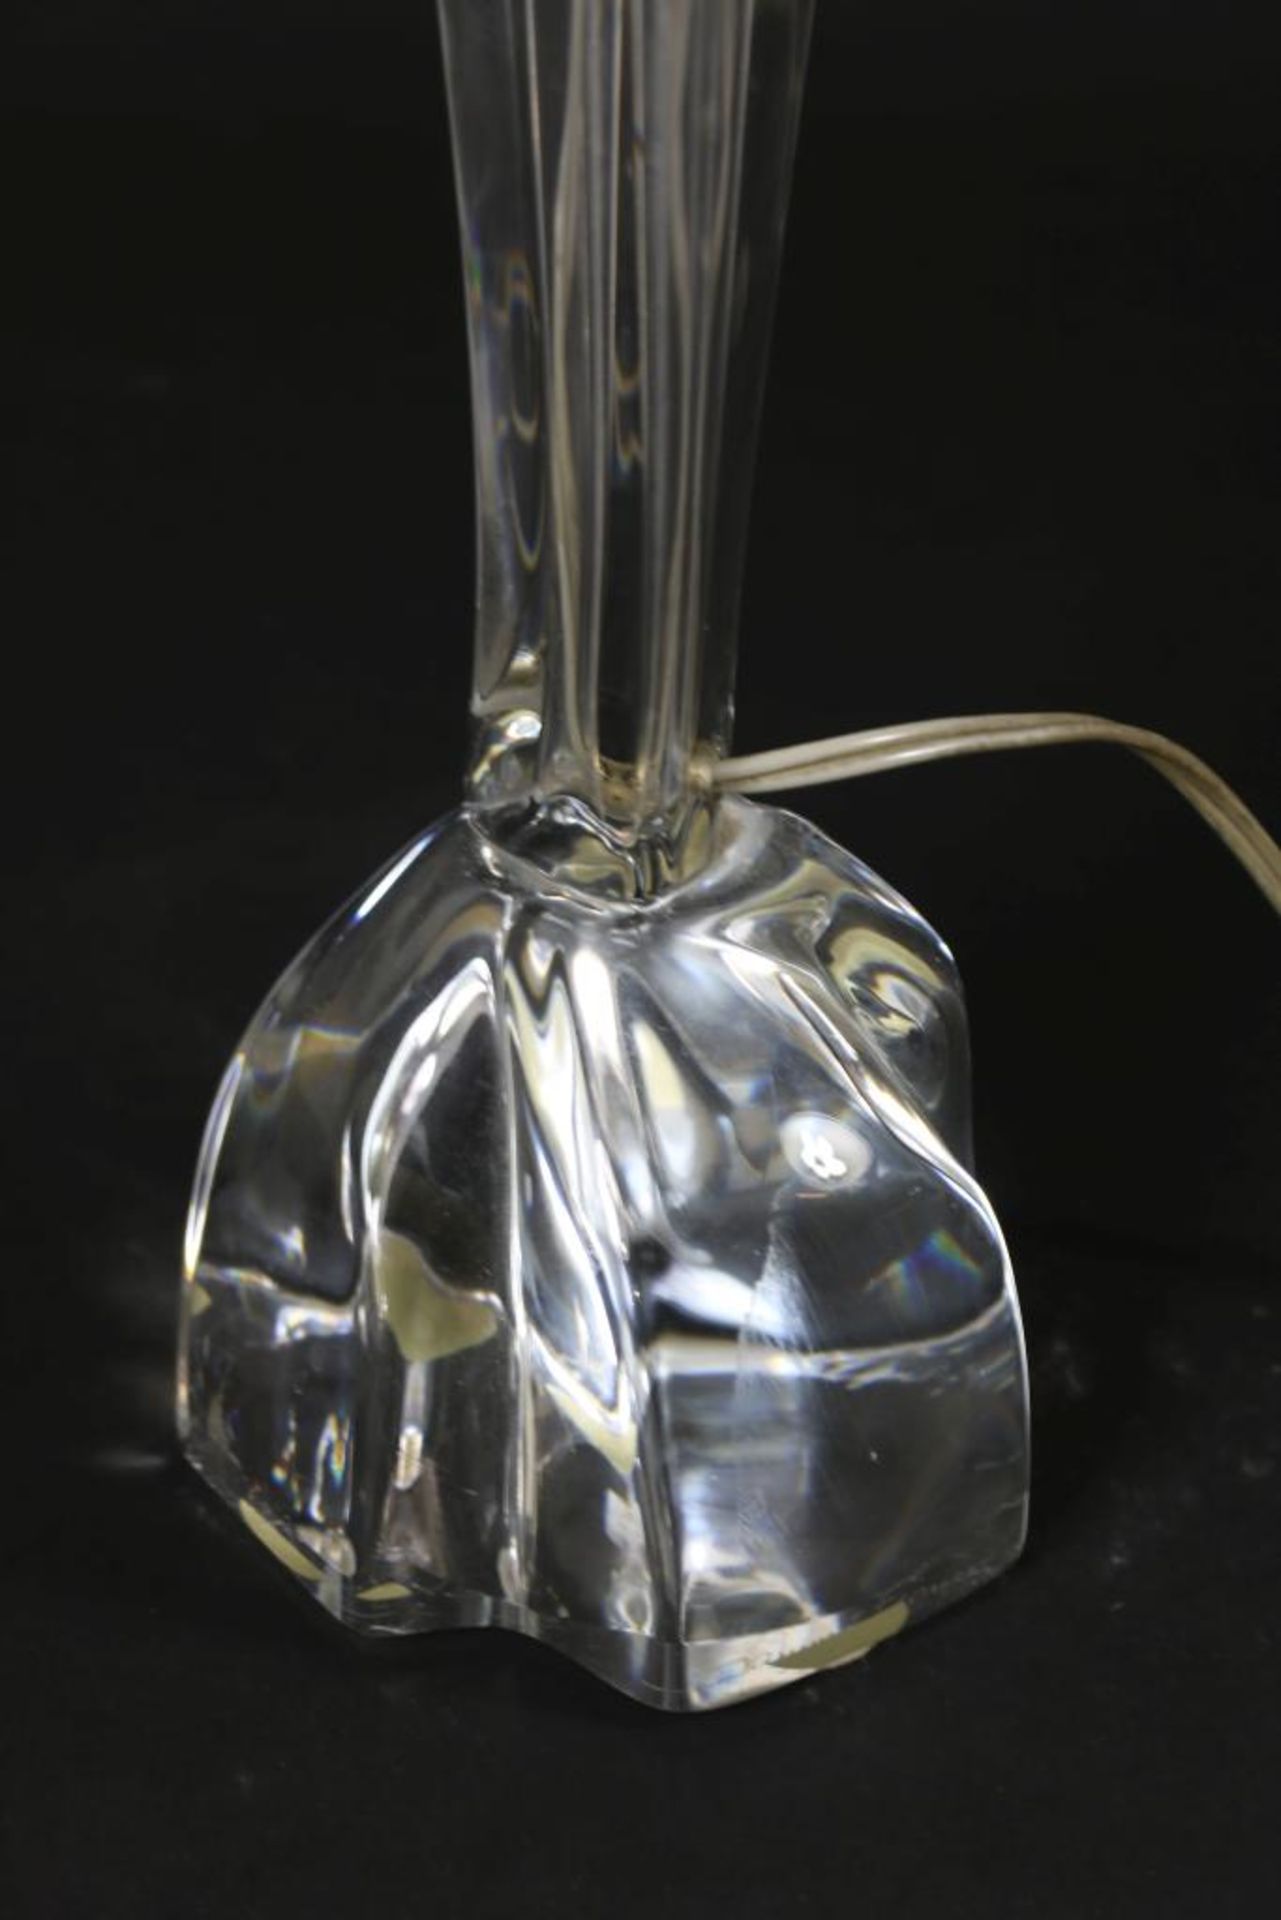 Dikglazen design lamp, Daum - Image 3 of 5